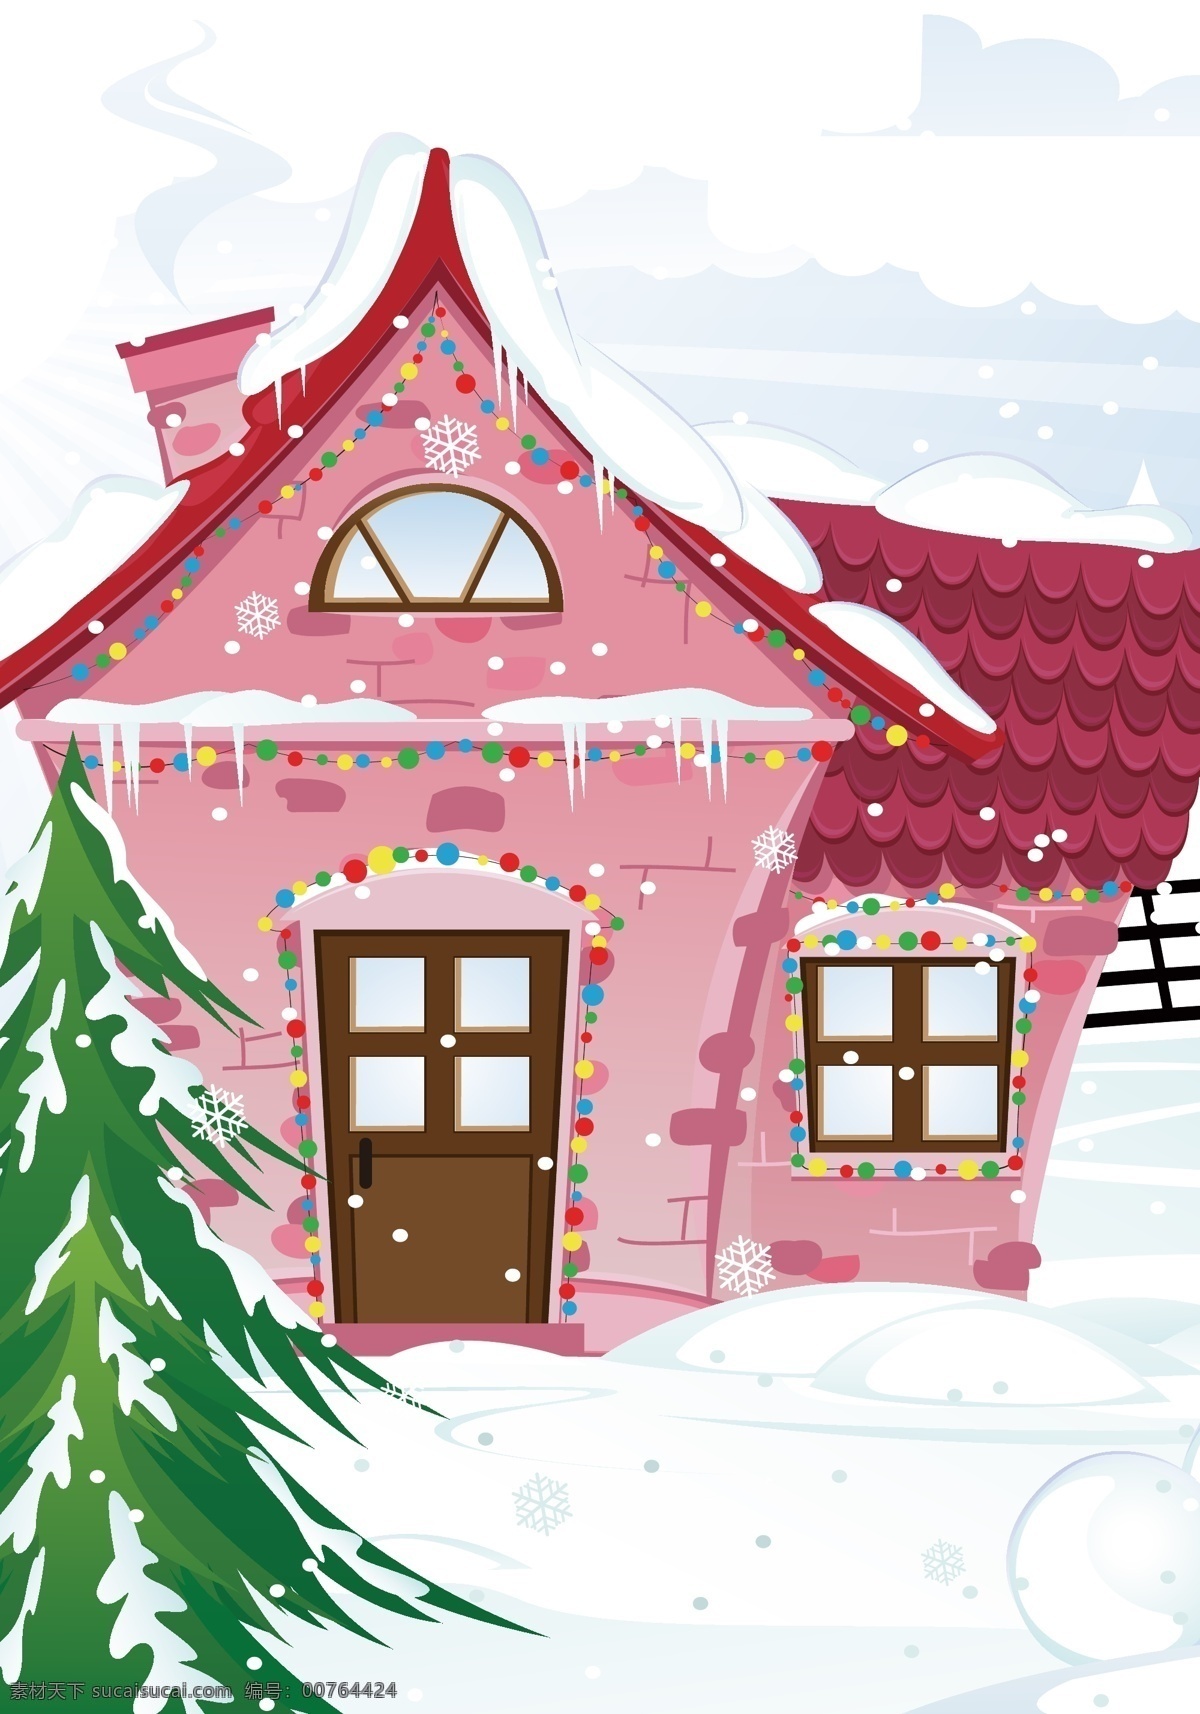 手绘 雪屋 背景 装饰 节日装饰 卡通 圣诞节 矢量背景装饰 树木 童趣